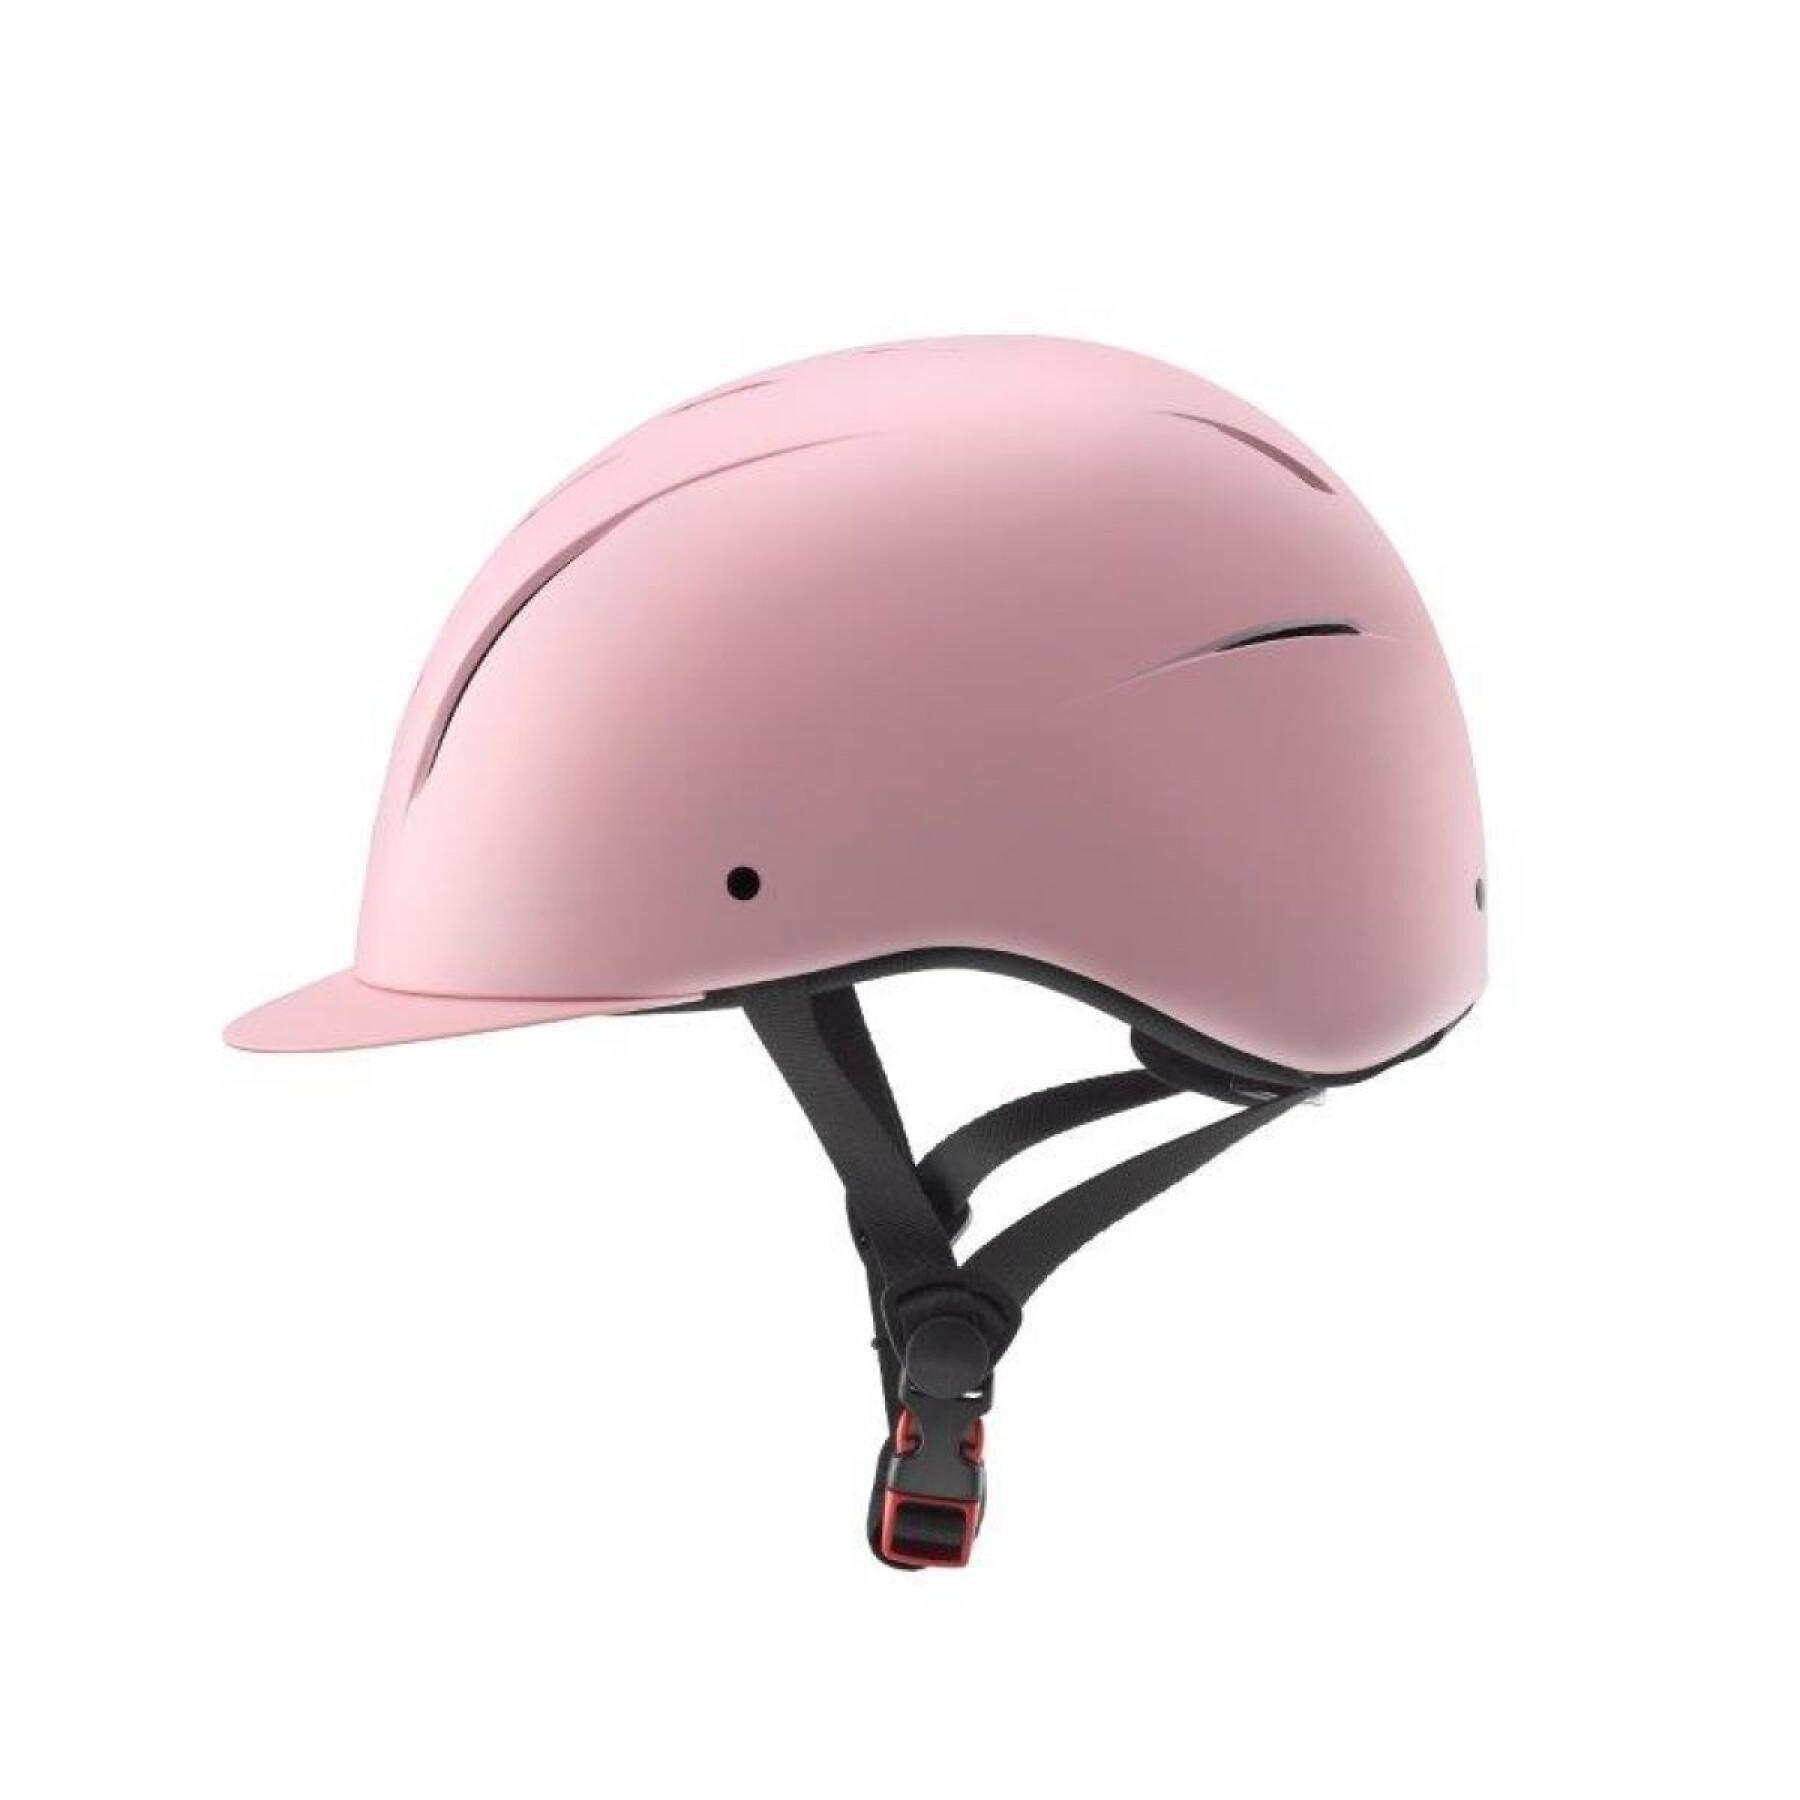 Riding helmet for women Daslö Saturno